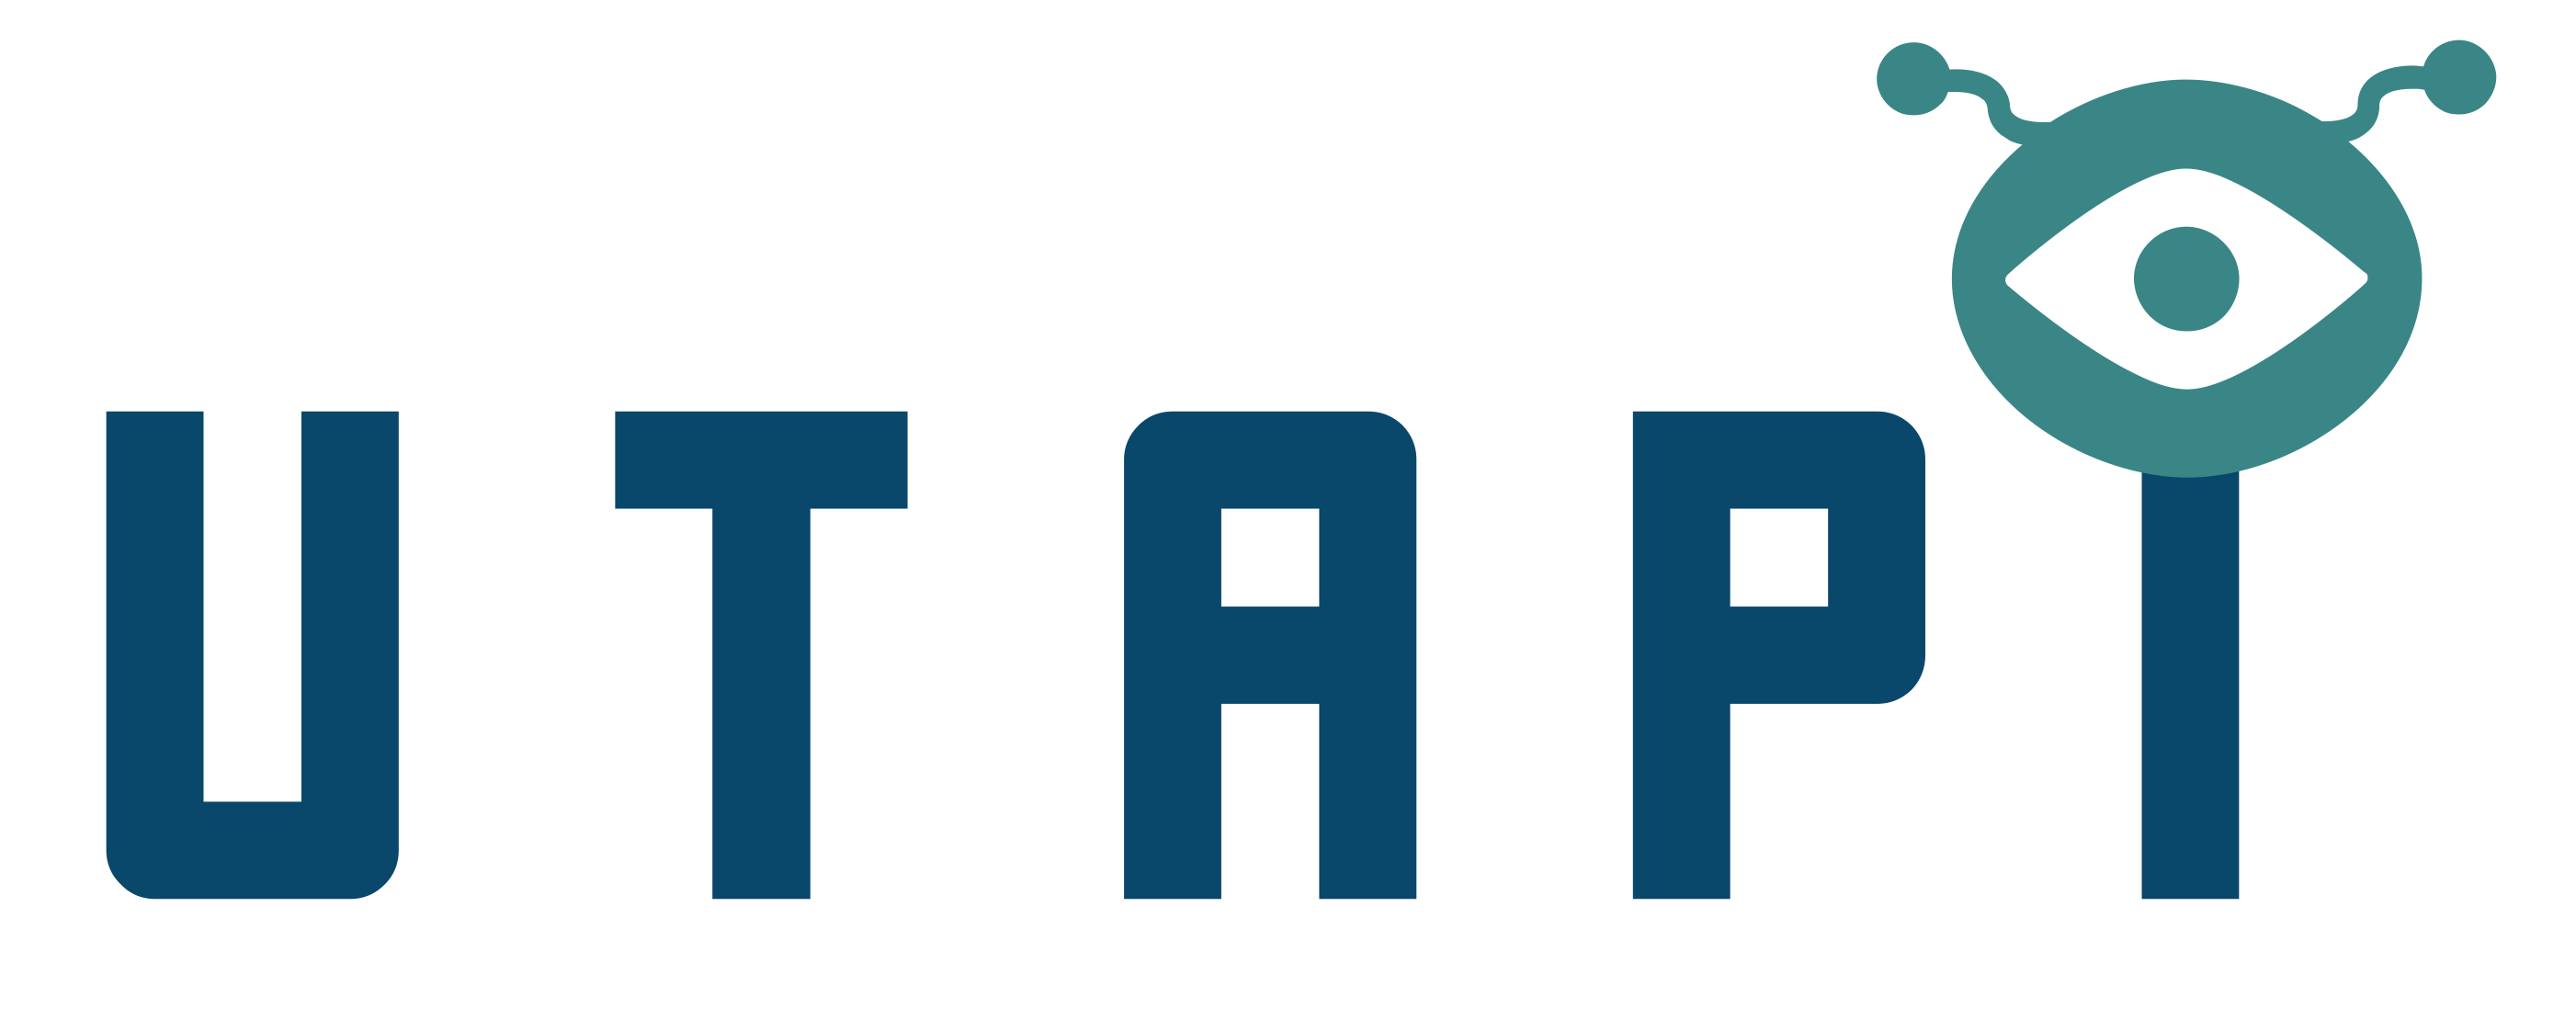 Utapi logo